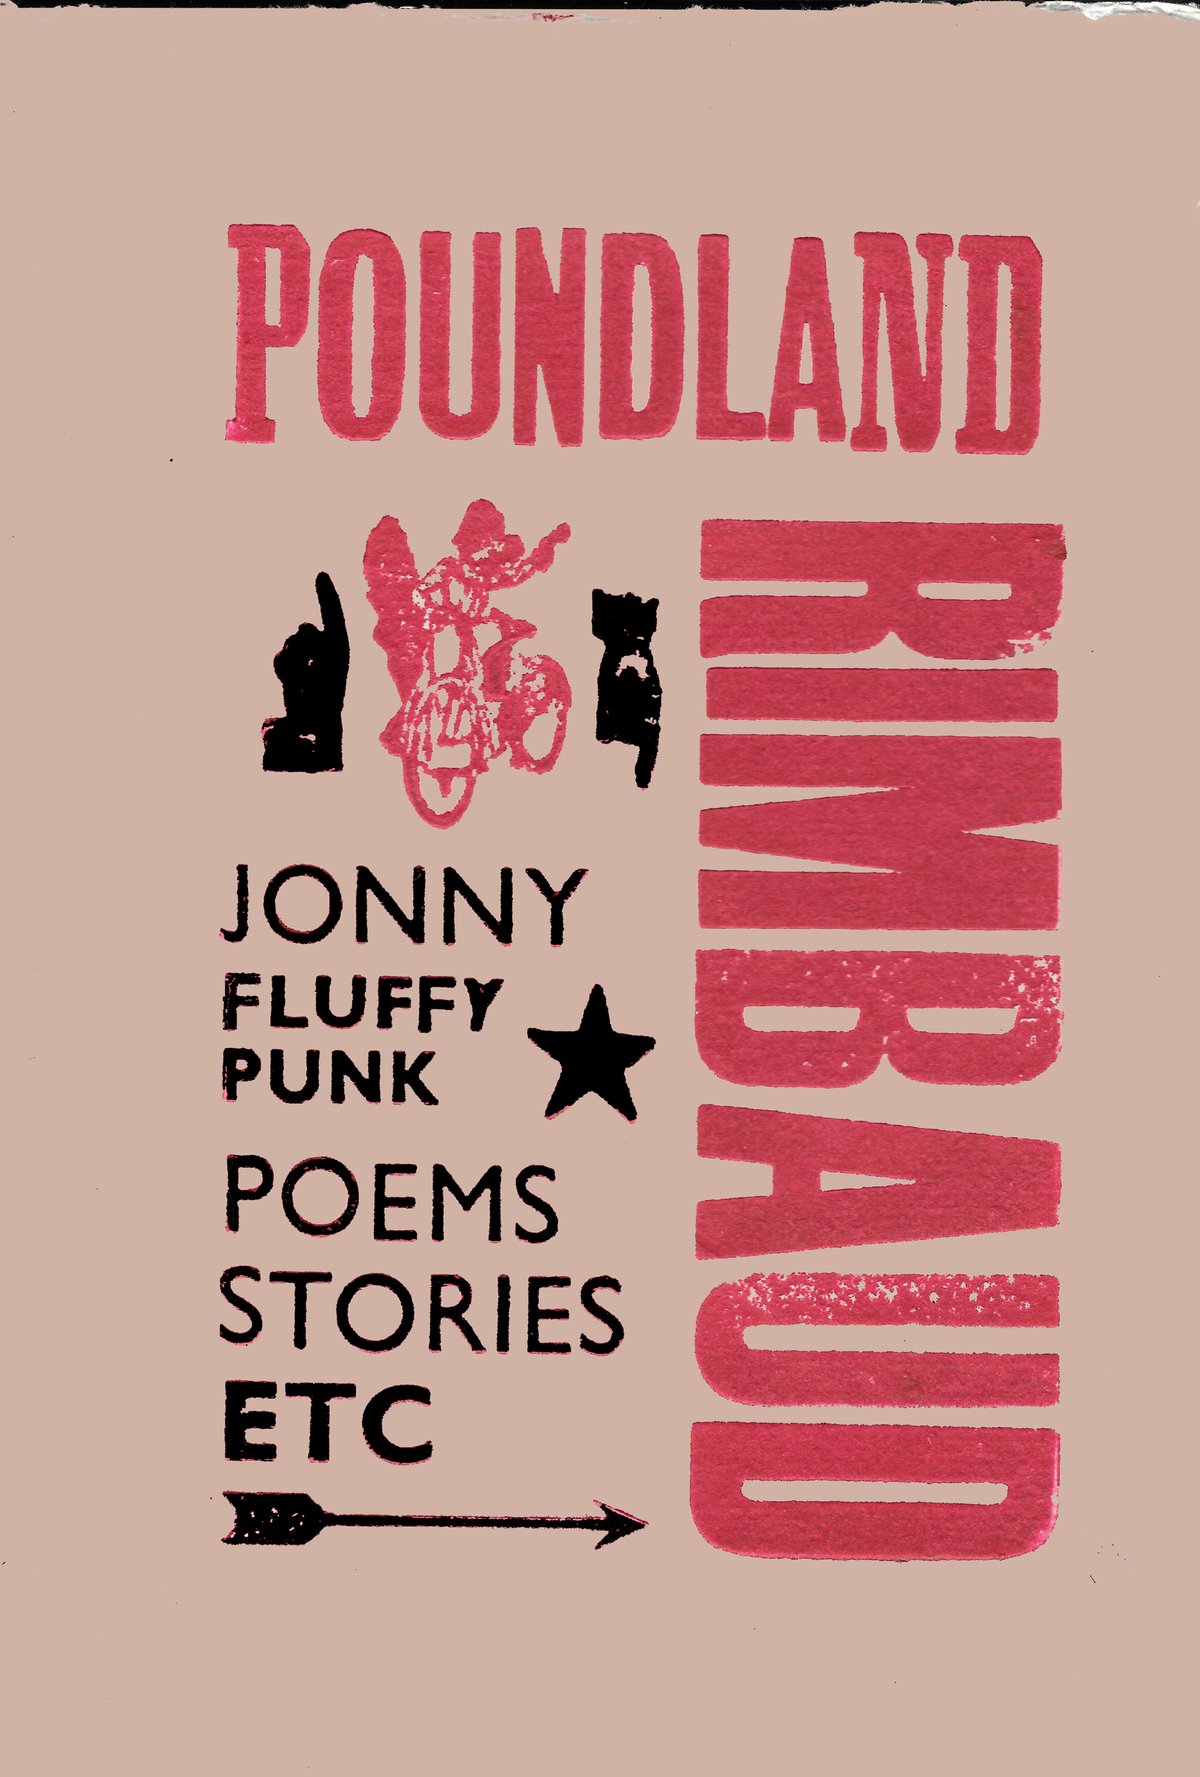 Image of Poundland Rimbaud by Jonny Fluffypunk